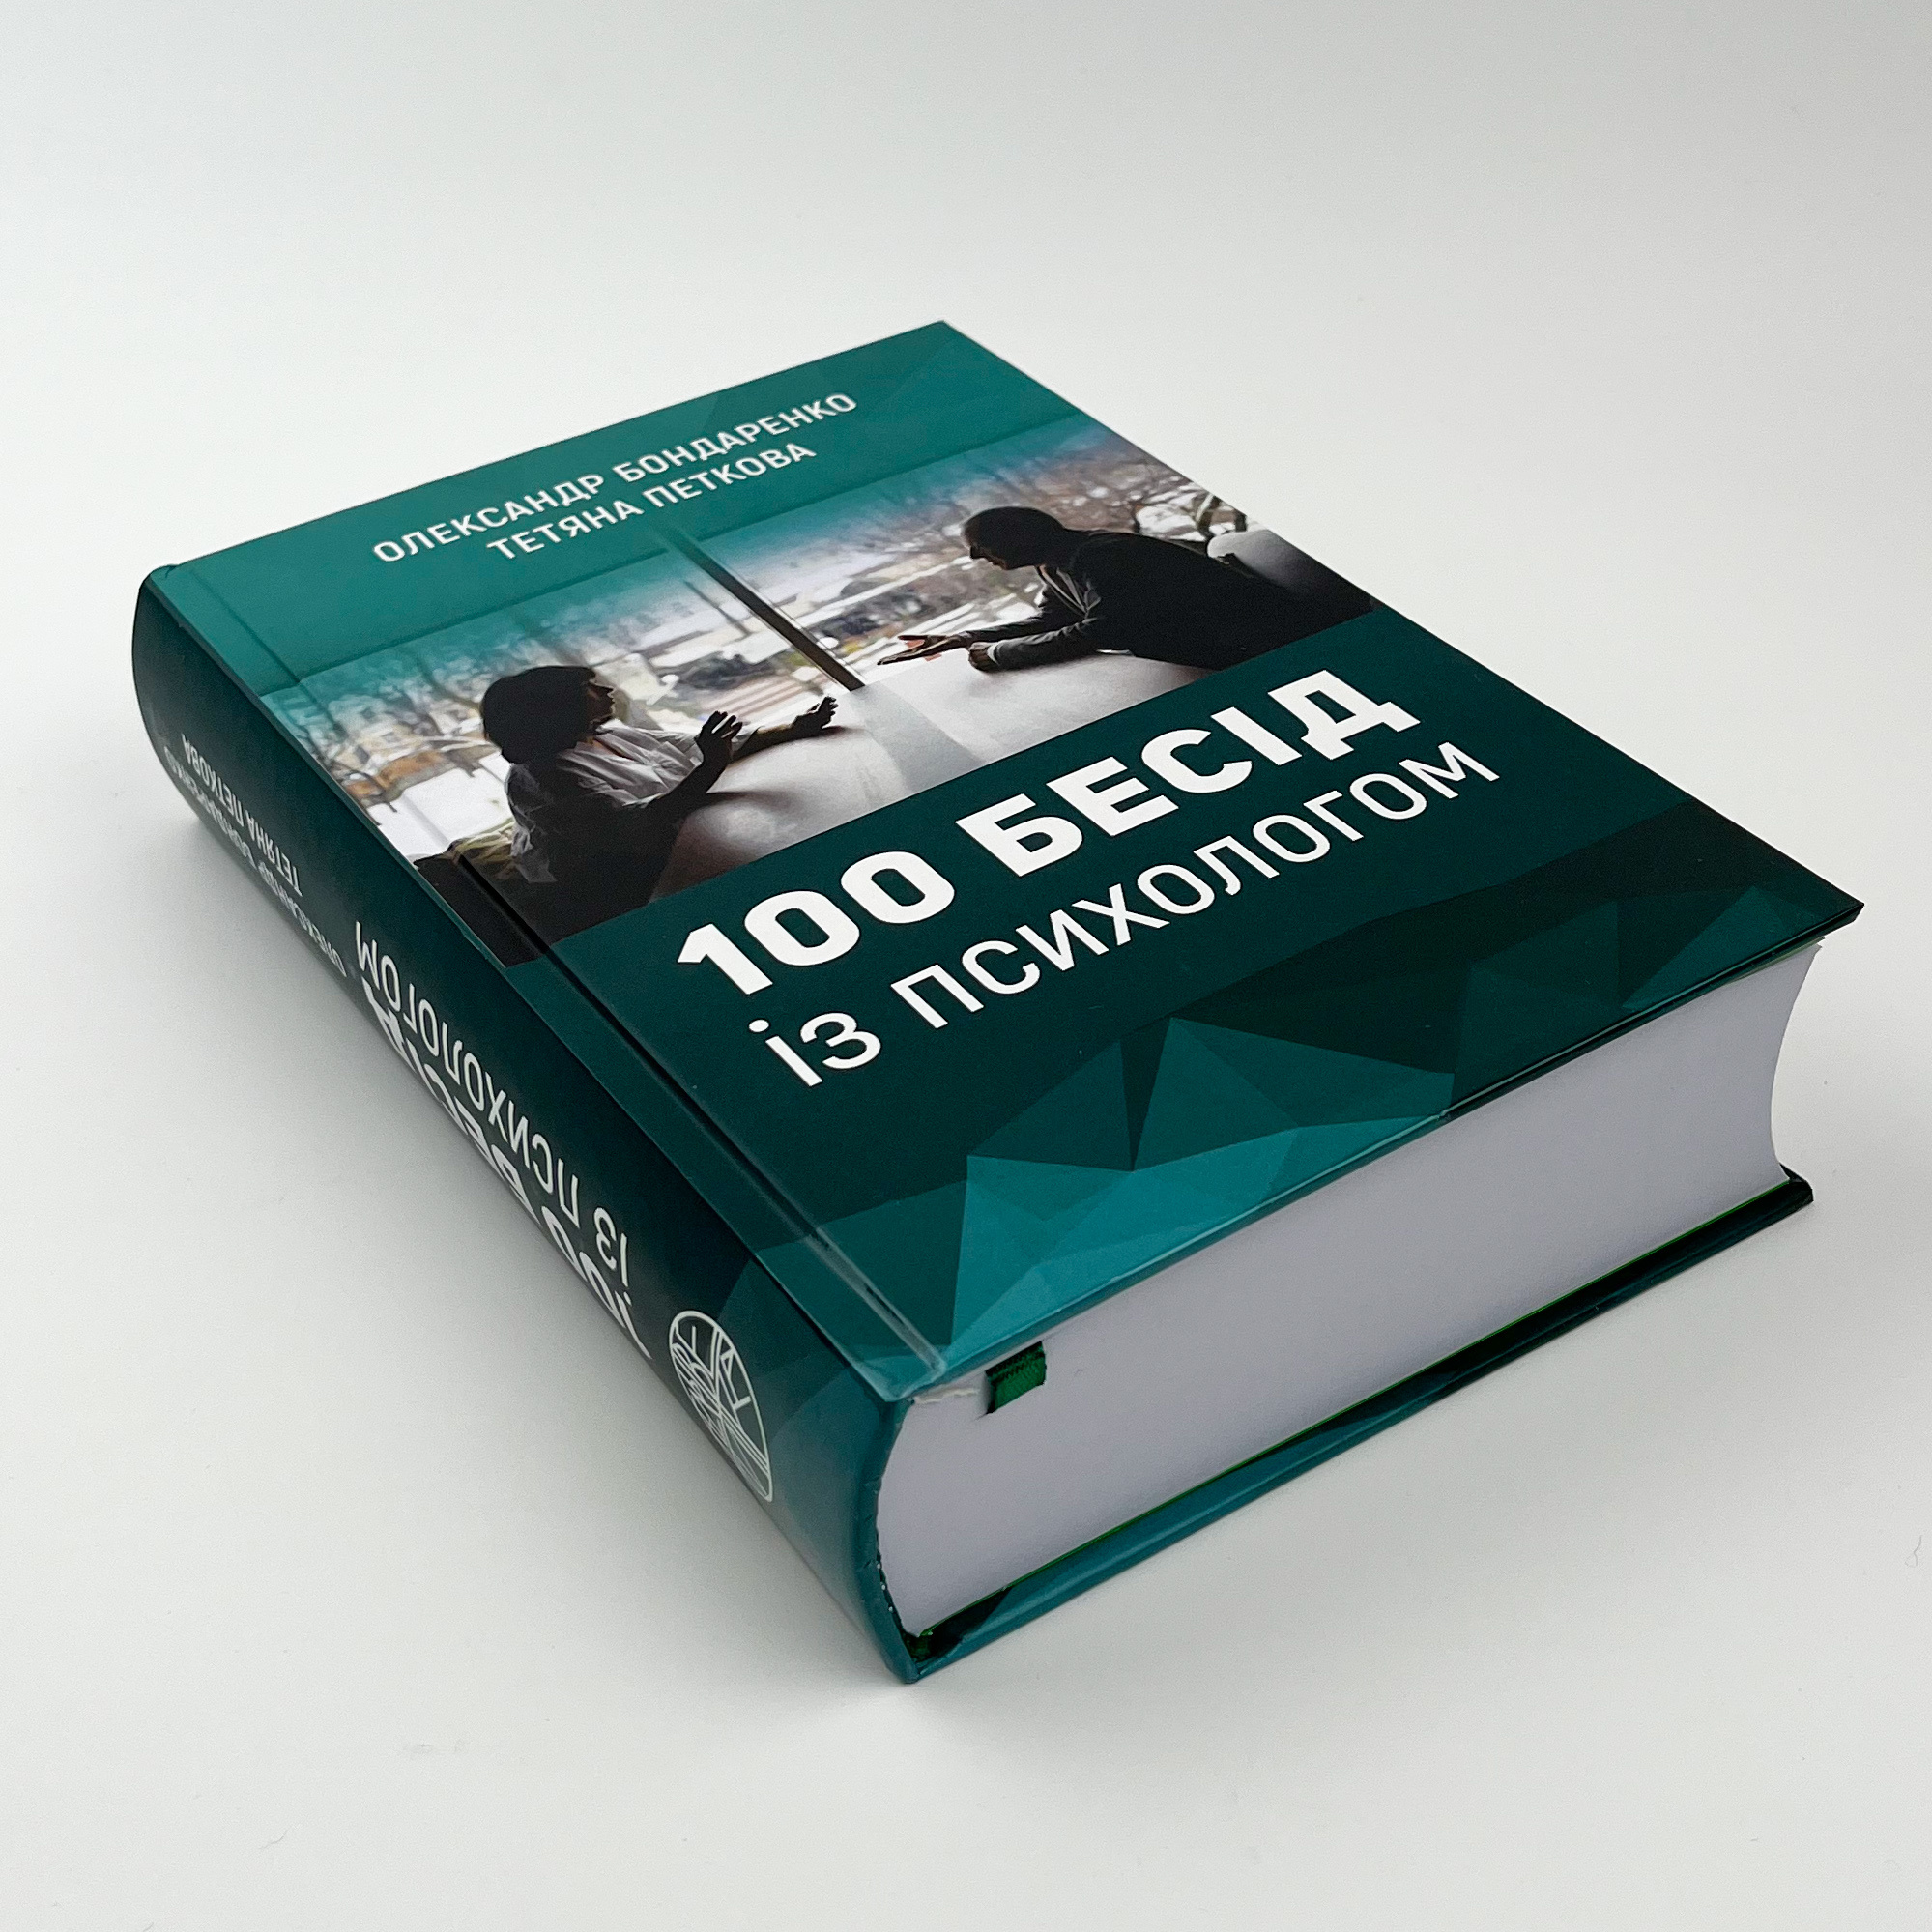 100 бесід із психологом. Автор — Олександр Бондаренко, Тетяна Петкова. 